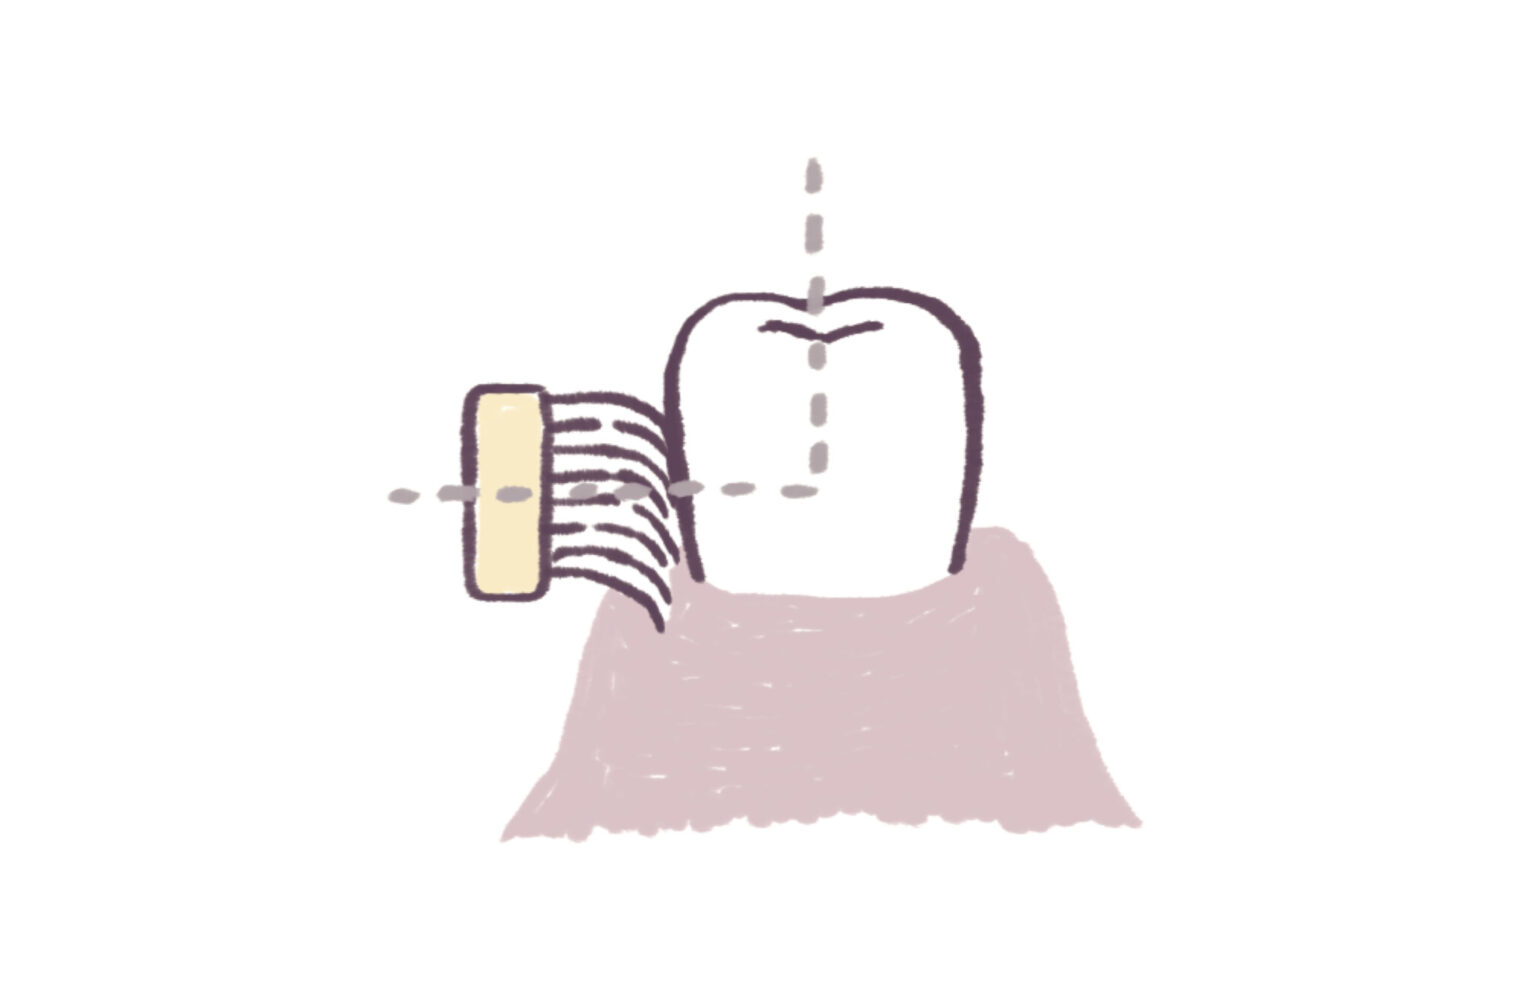 3.歯間を綺麗に「スクラッビング法」。歯に歯ブラシを直角に当て、毛先が歯と歯の間に入るように小刻みに磨く。歯周ポケットの掃除には向かないため、バス法や歯間ブラシなどと併用を。